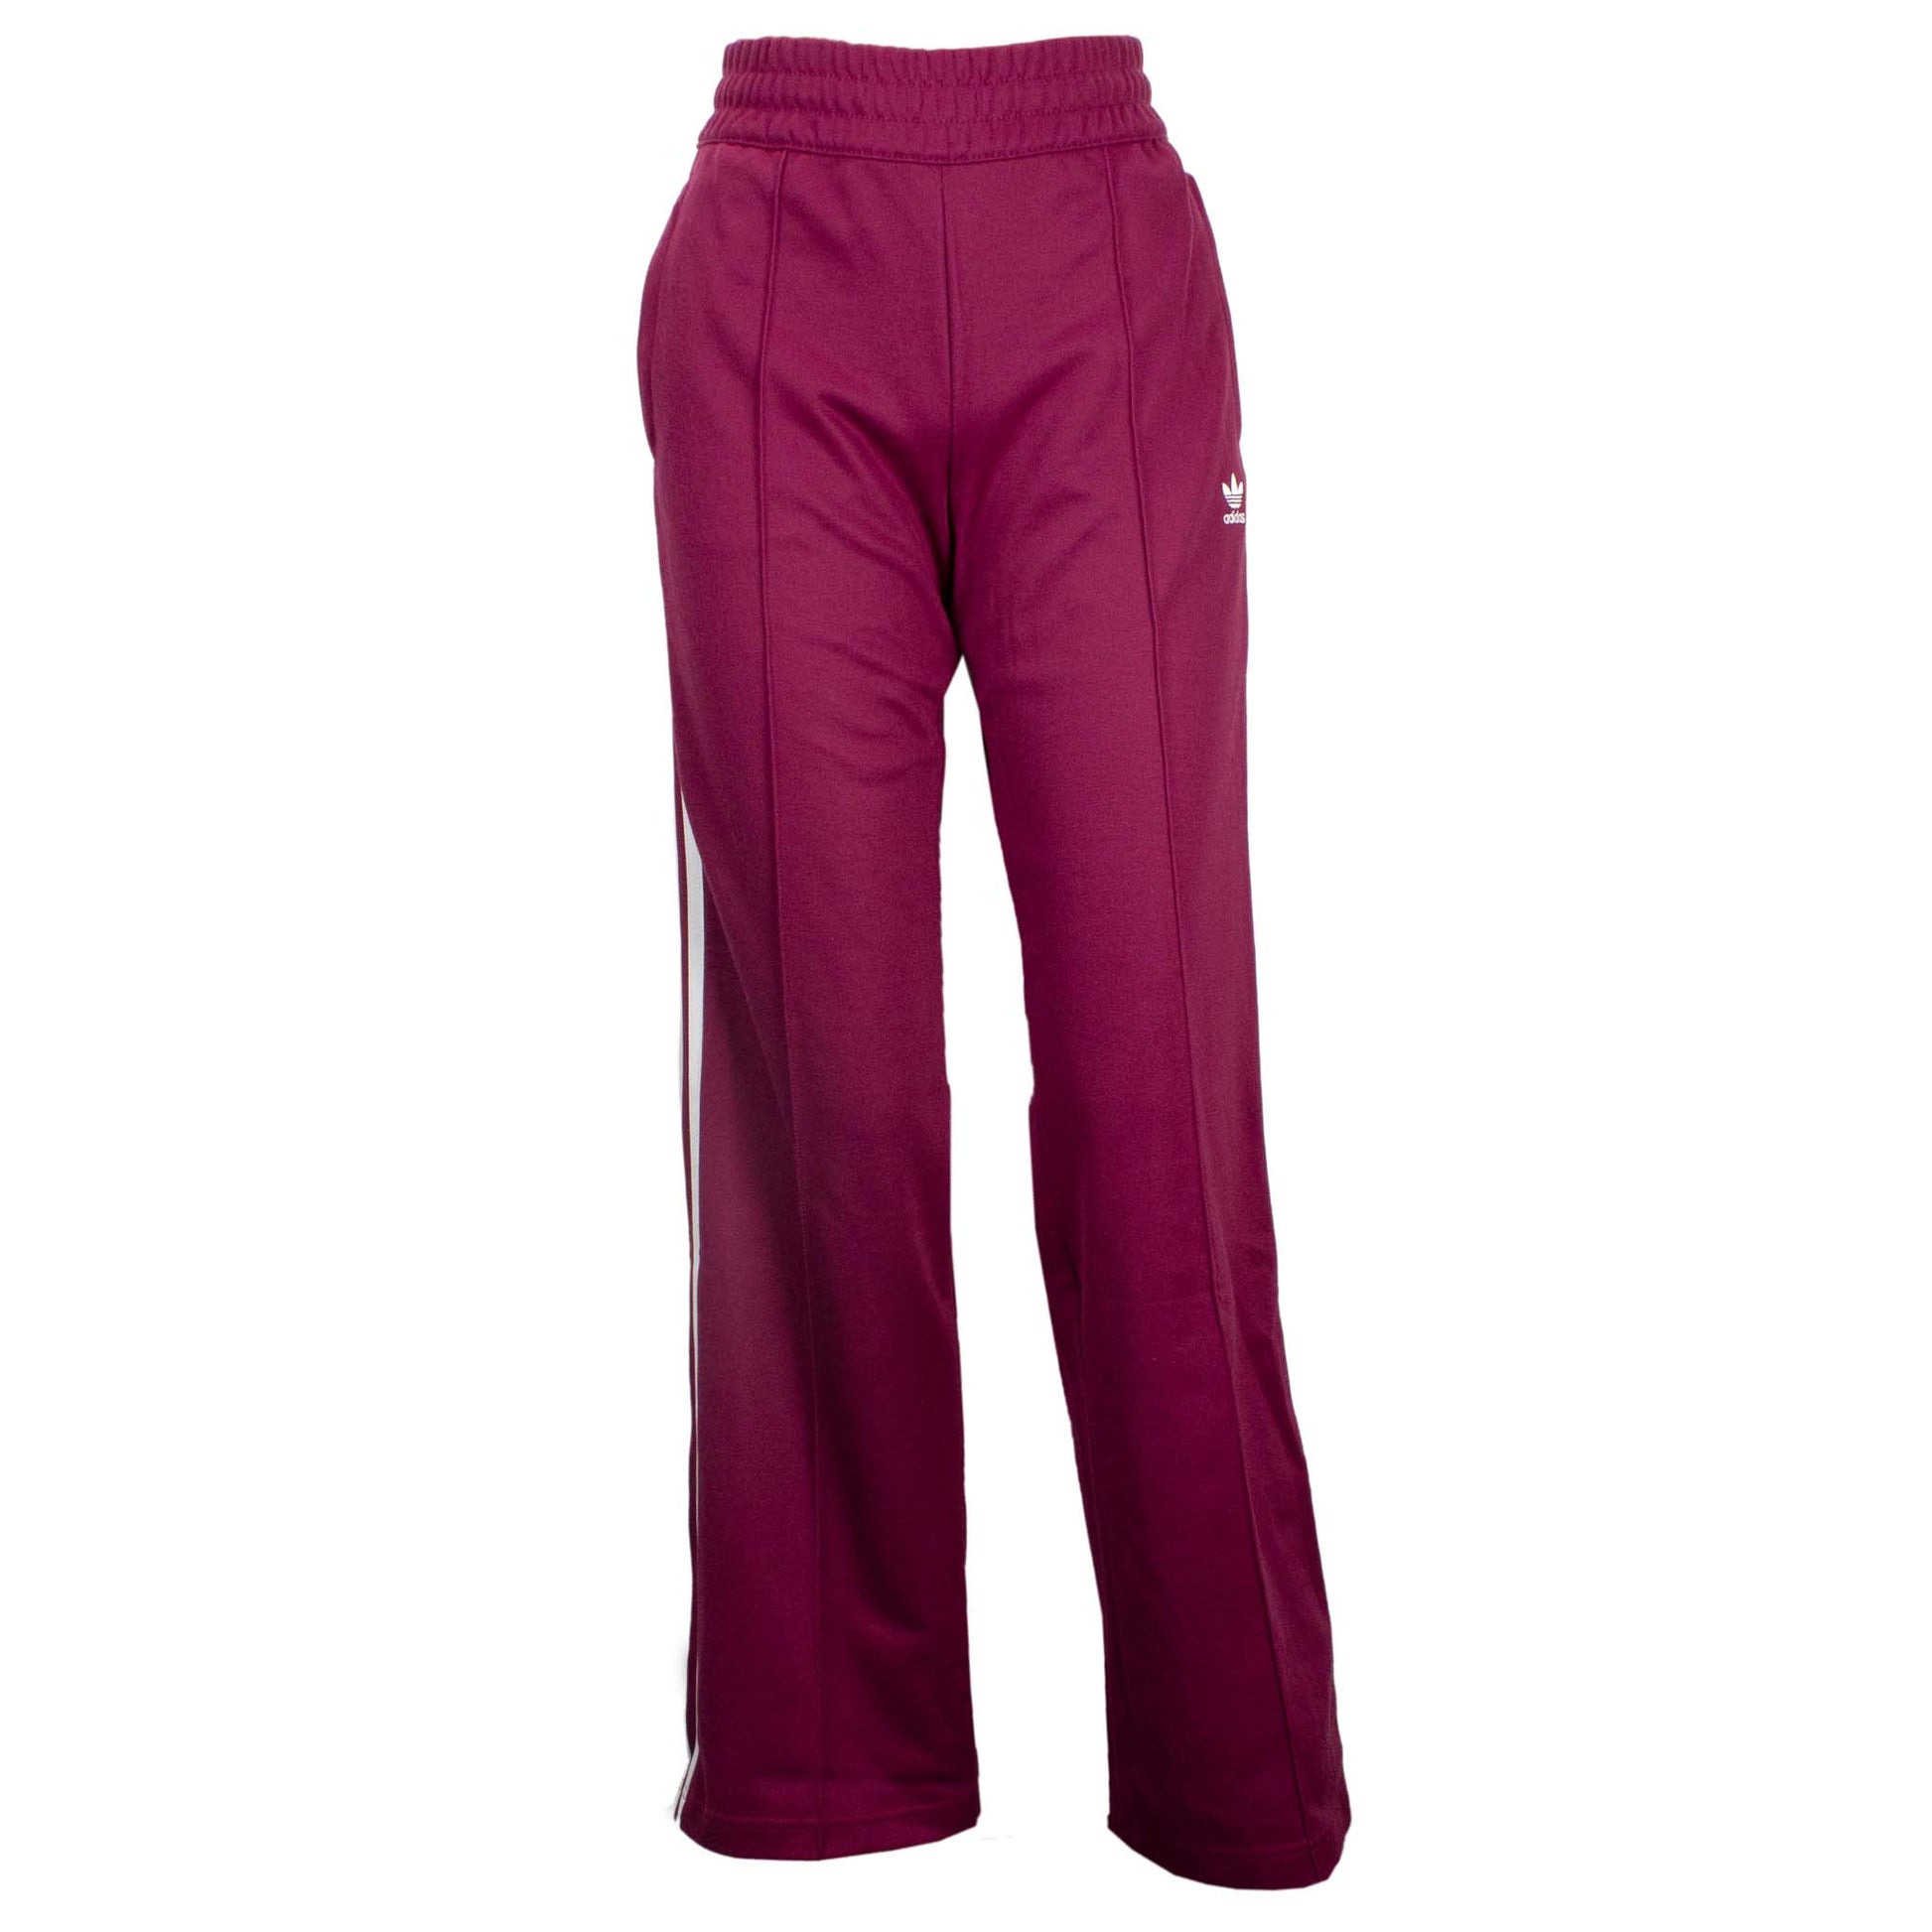 Adidas Originals Contemp Bb Track Pant Damen Hose Sporthose Pink DH3191-3